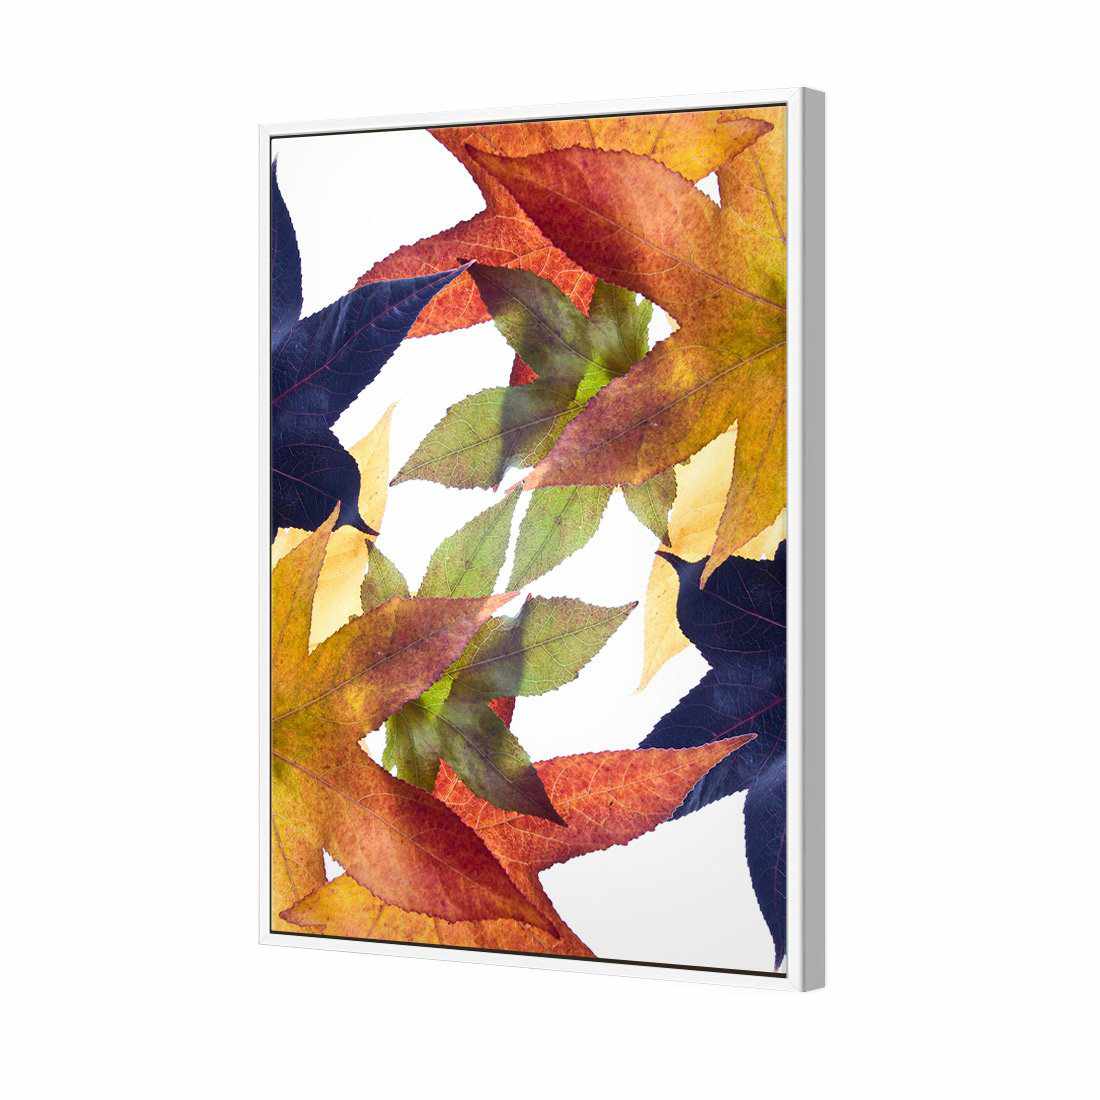 Leaf Kaleidoscope Canvas Art-Canvas-Wall Art Designs-45x30cm-Canvas - White Frame-Wall Art Designs